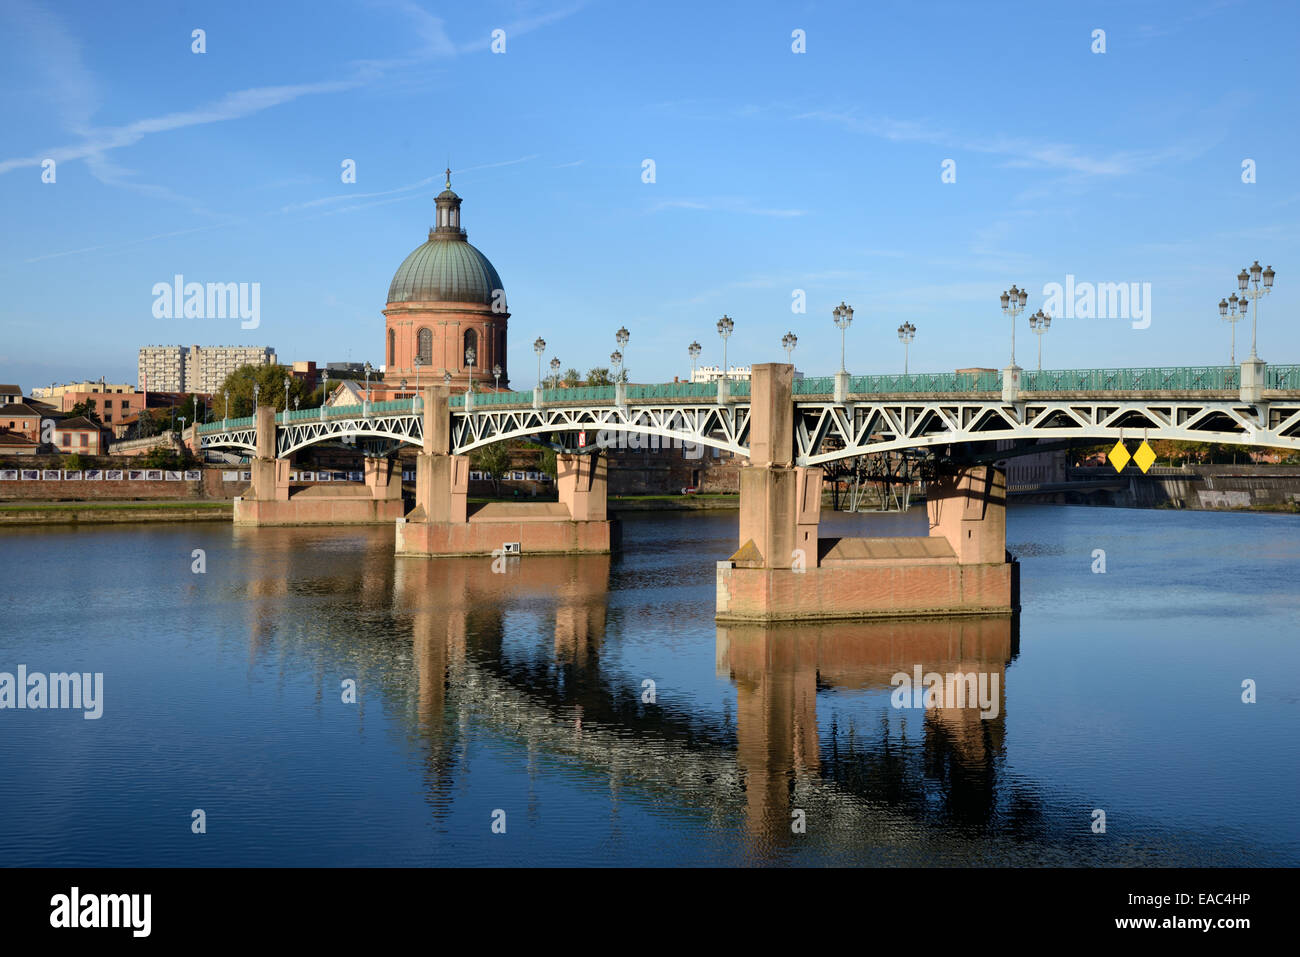 St Pierre Bridge or Pont Saint Pierre & Dome of St Joseph's Chapel & the Garonne River Toulouse France Stock Photo